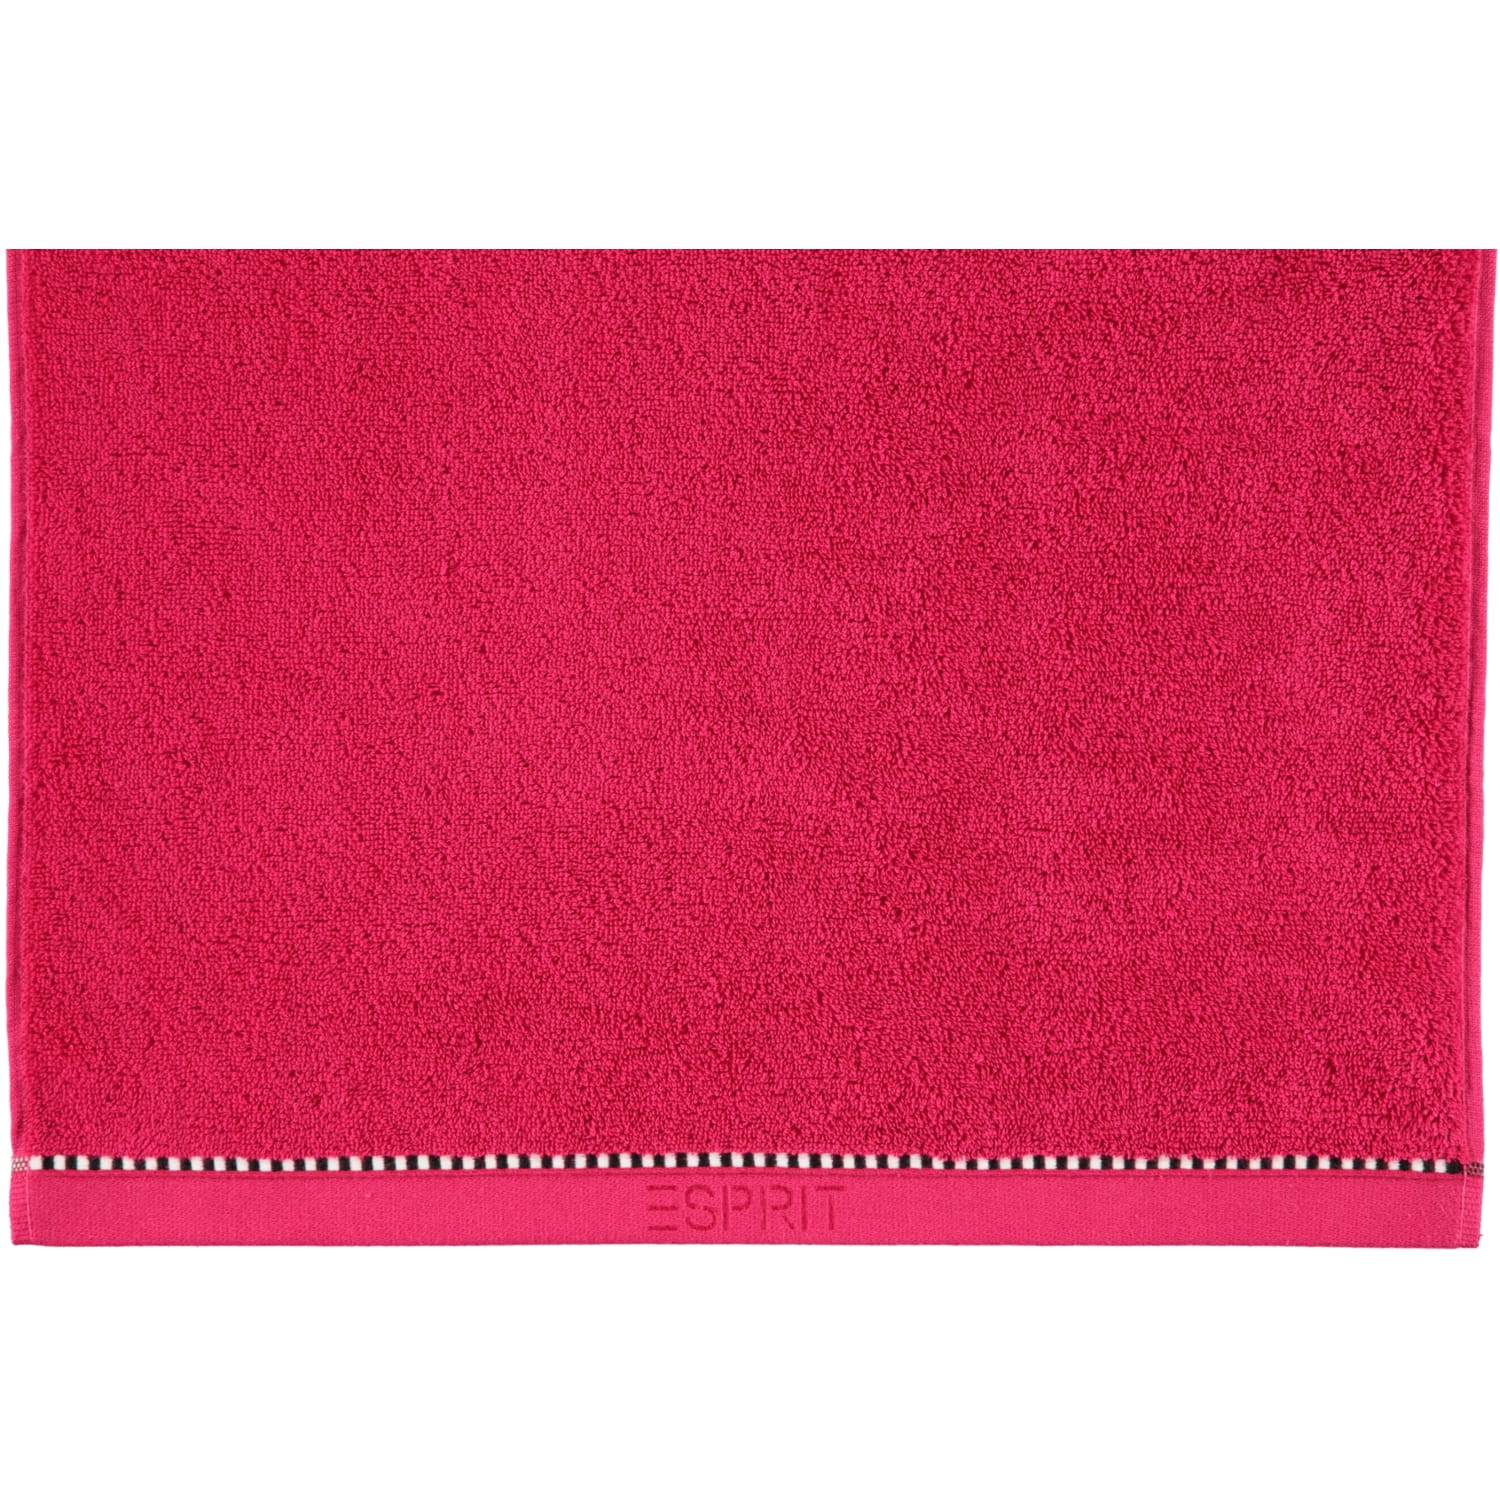 Box - | ESPRIT 362 | ESPRIT raspberry - Solid Marken Handtücher Esprit Farbe: |